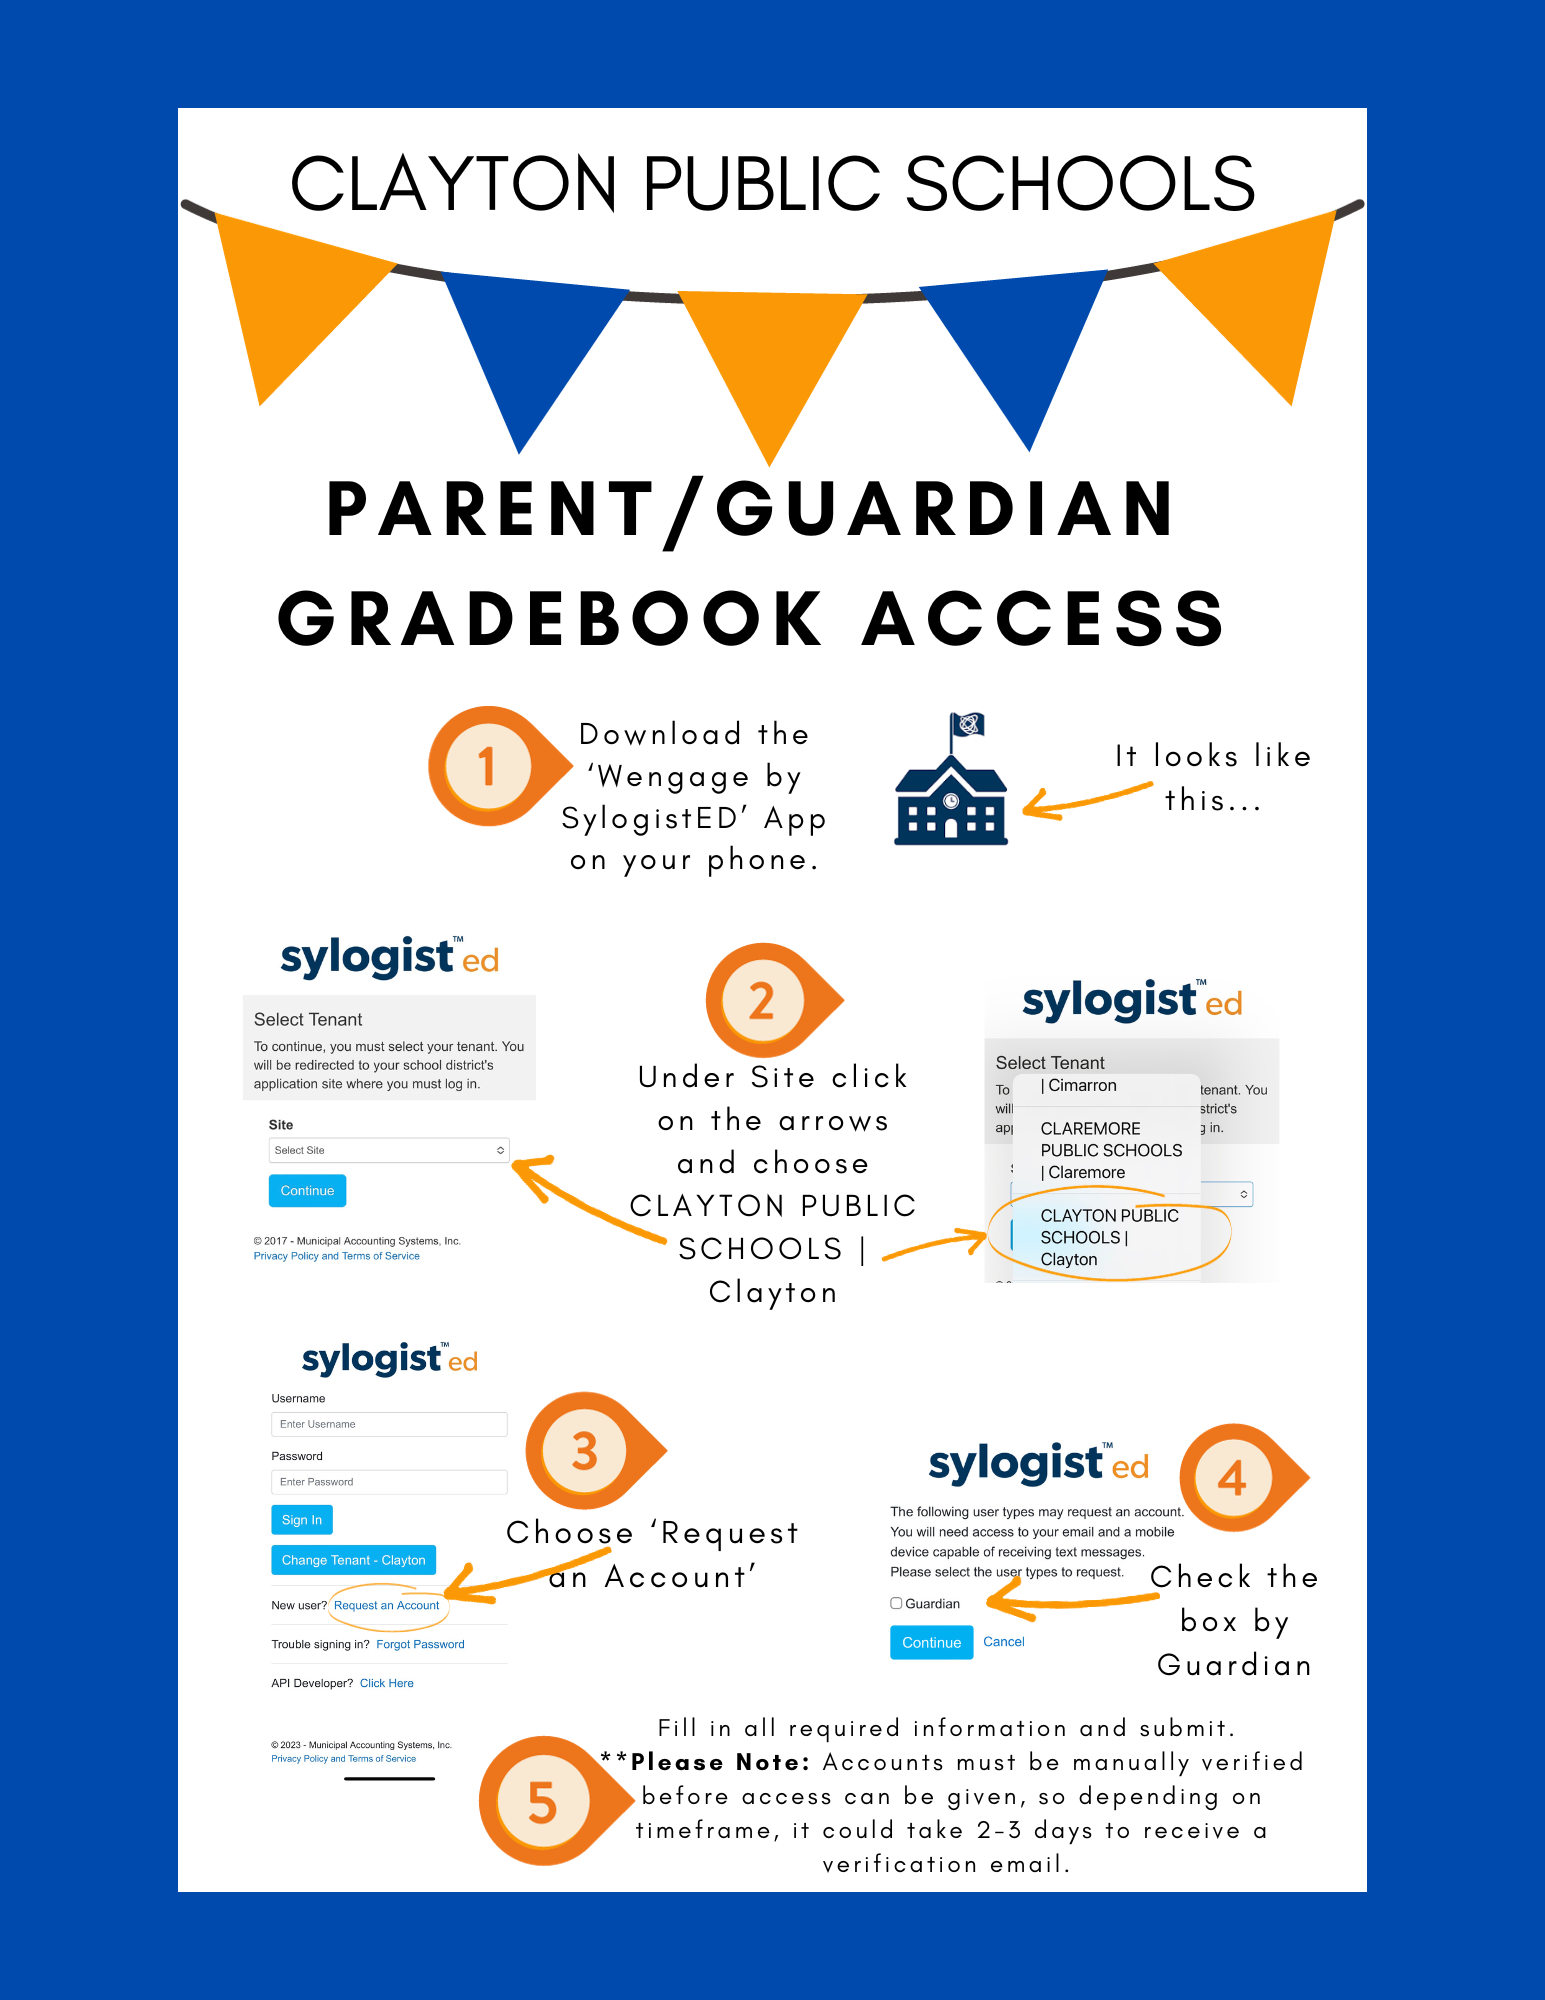 Parent/Guardian Gradebook Access "How To"